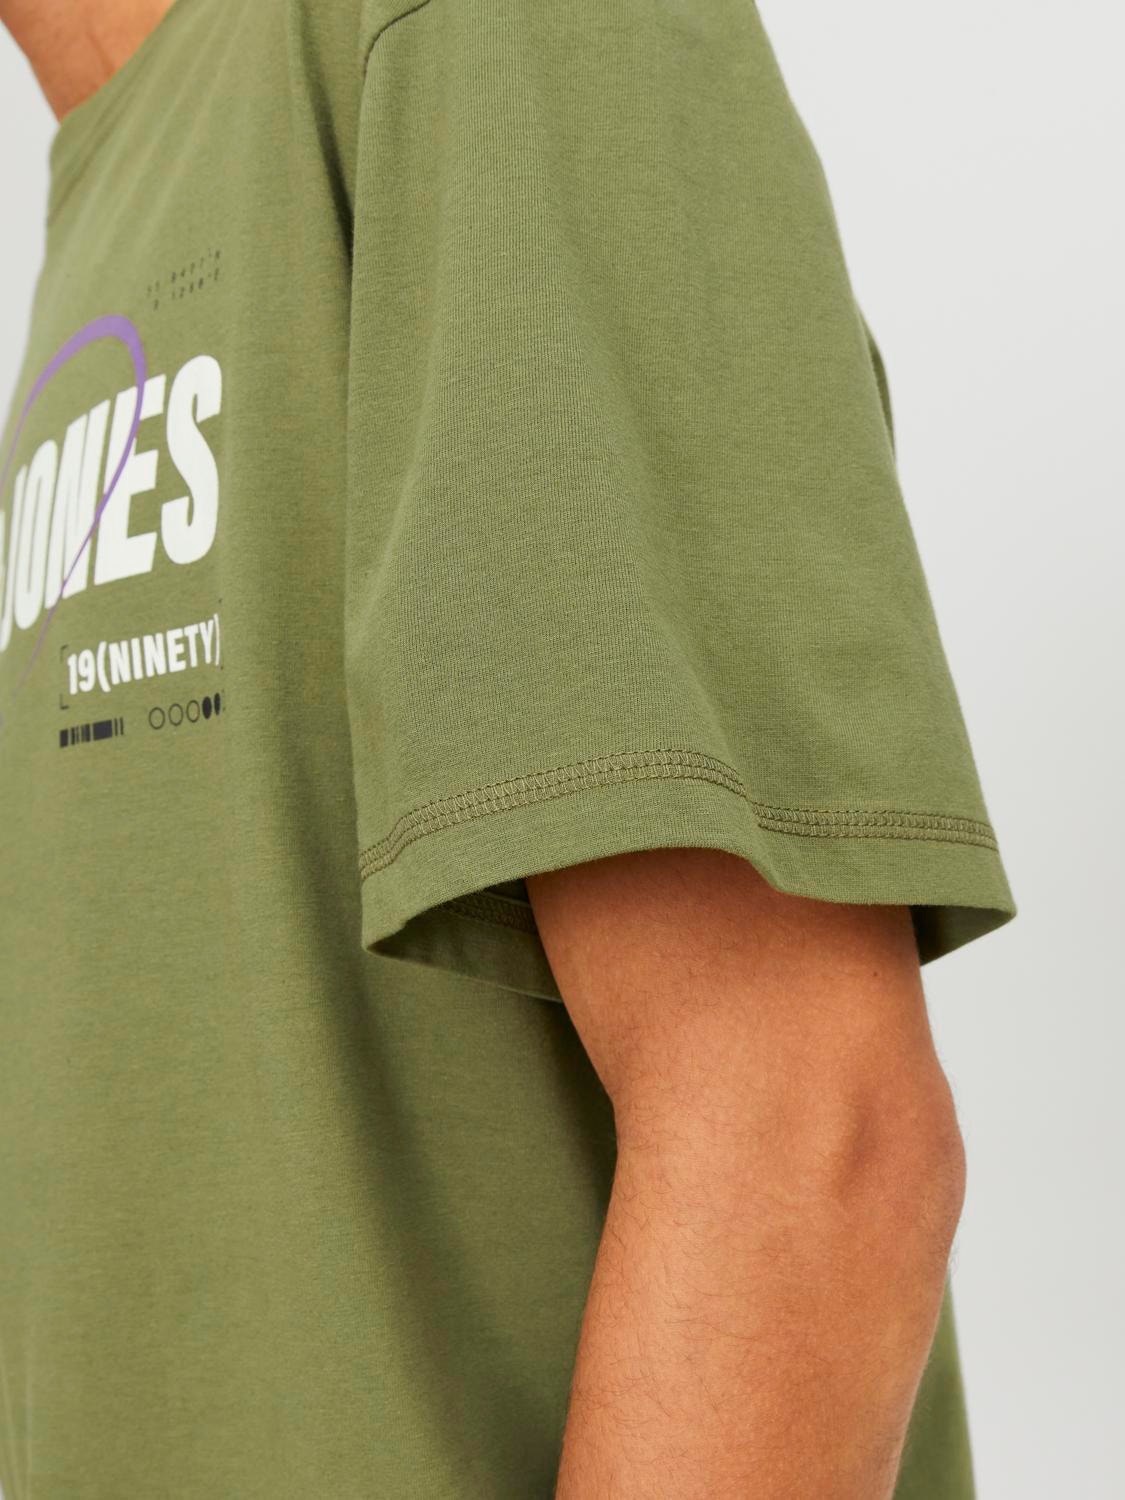 Jack & Jones Logo Ronde hals T-shirt -Olive Branch - 12245712